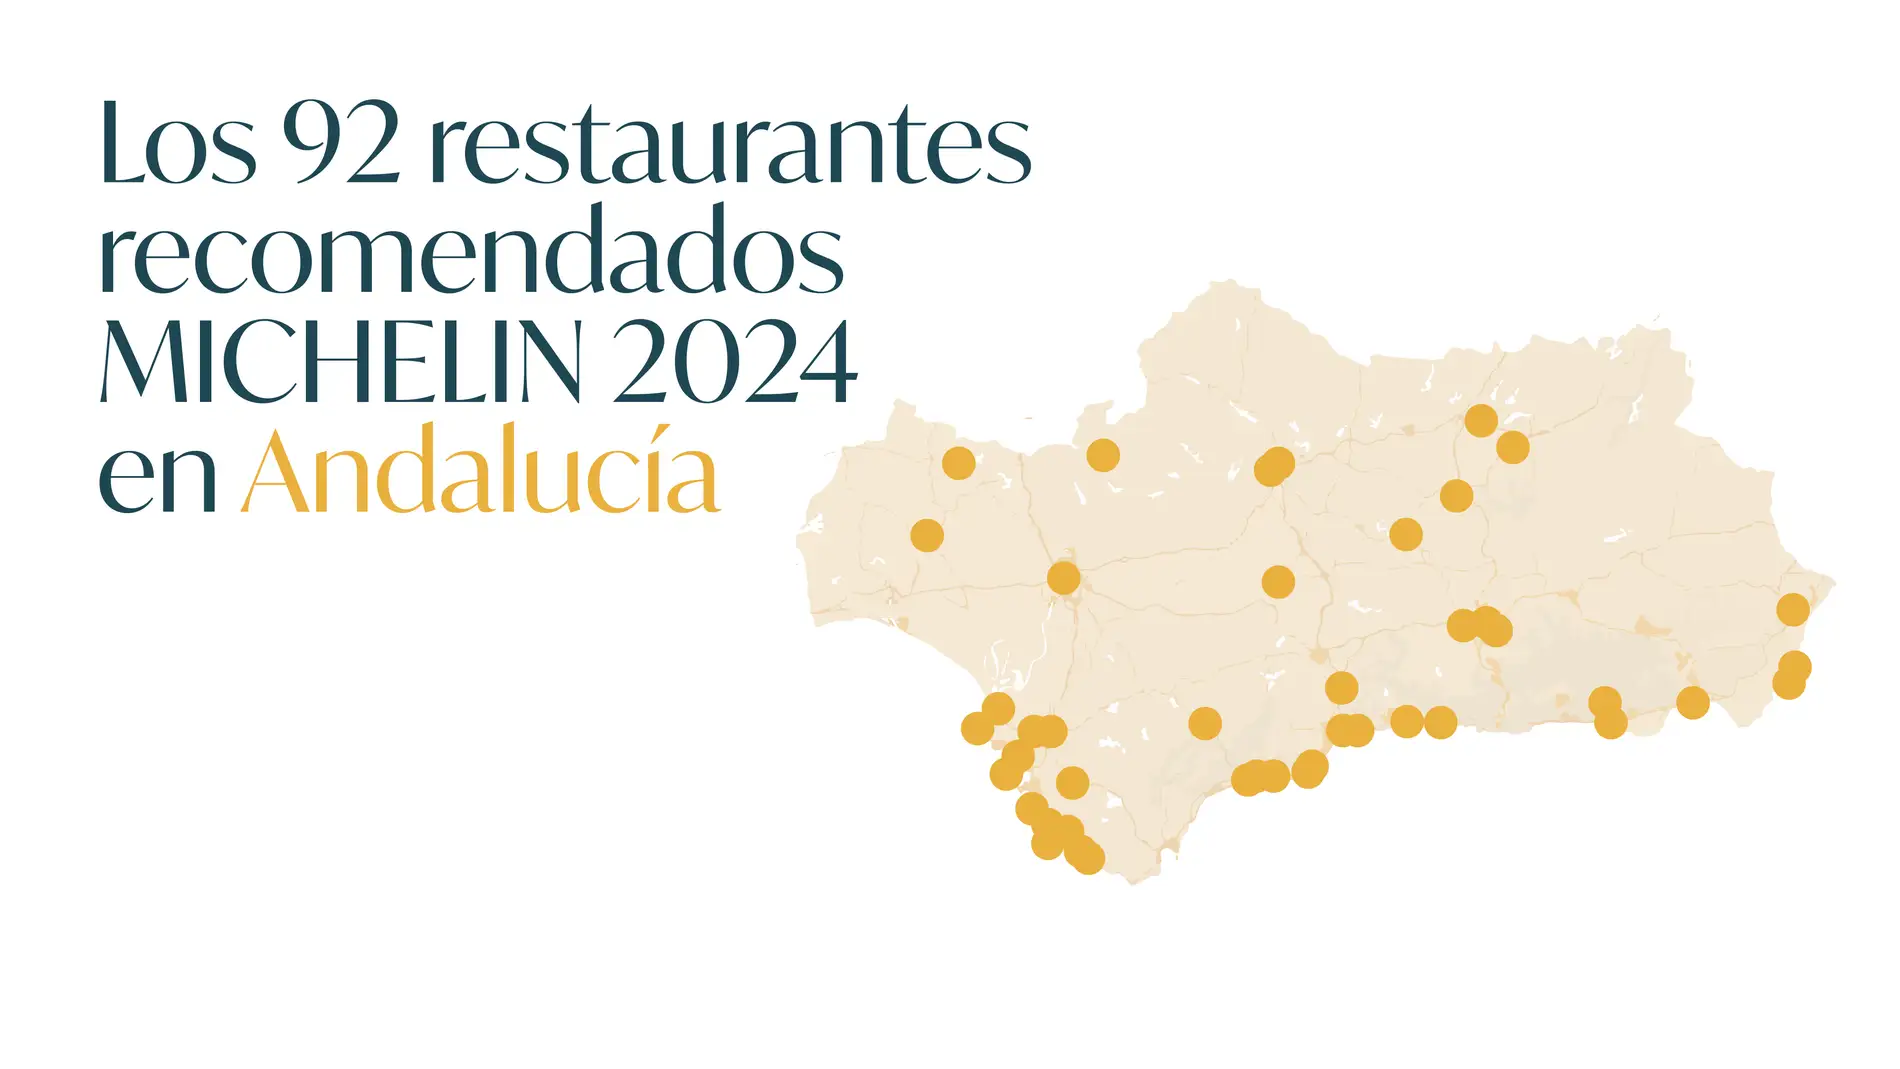 Royal Bliss entrega las placas de los ‘Restaurantes Recomendados’ en la Guía MICHELIN España 2024 a 92 establecimientos andaluces